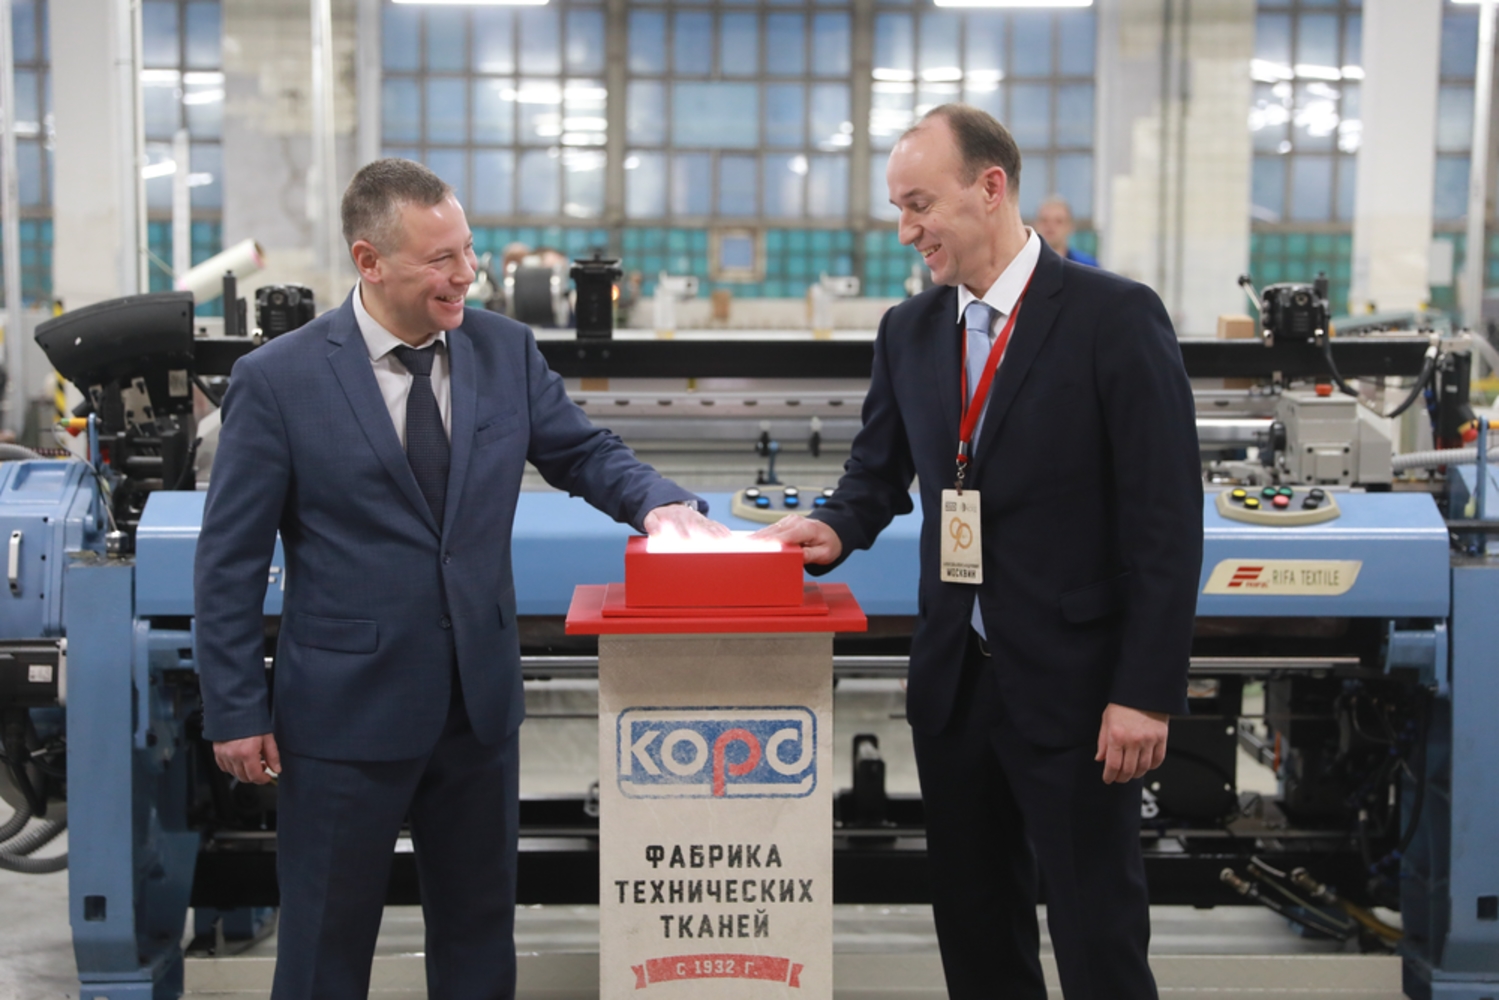 Губернатор Ярославской области принял участие в запуске новой линии станков в АО «Корд»